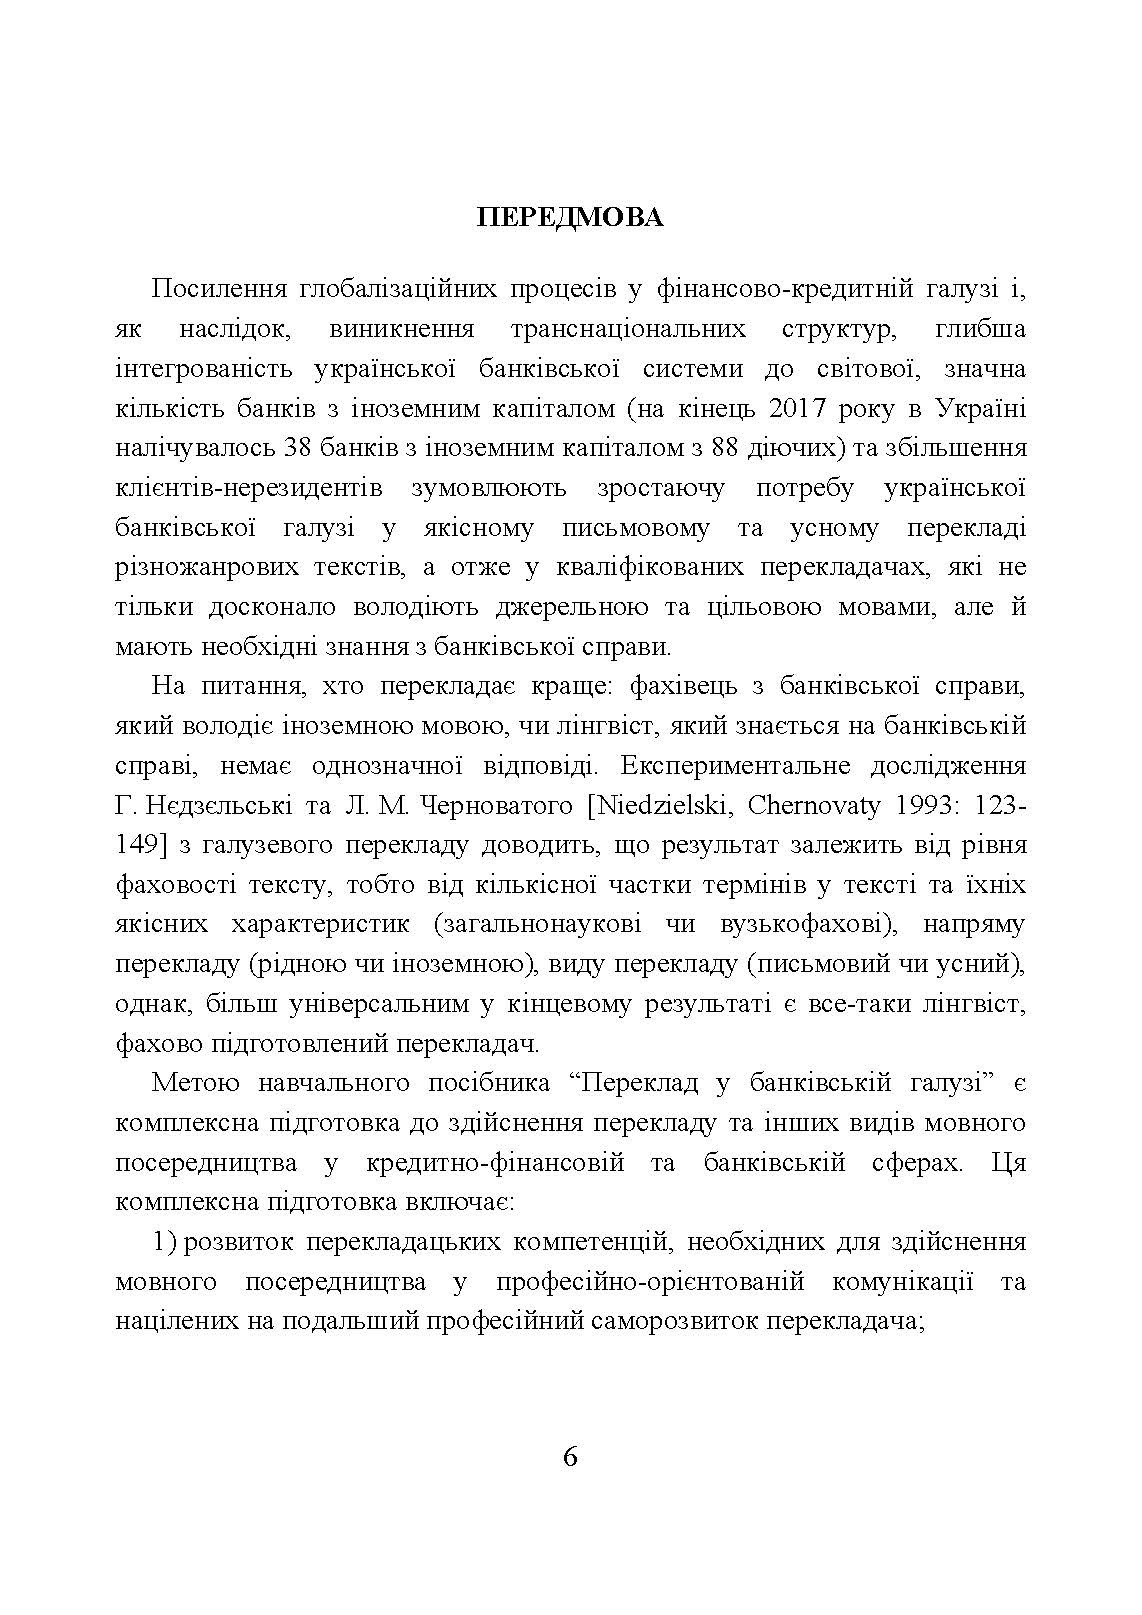 Переклад у банківській галузі  (2019 год). Автор — Набережнєва Т. Є.. 